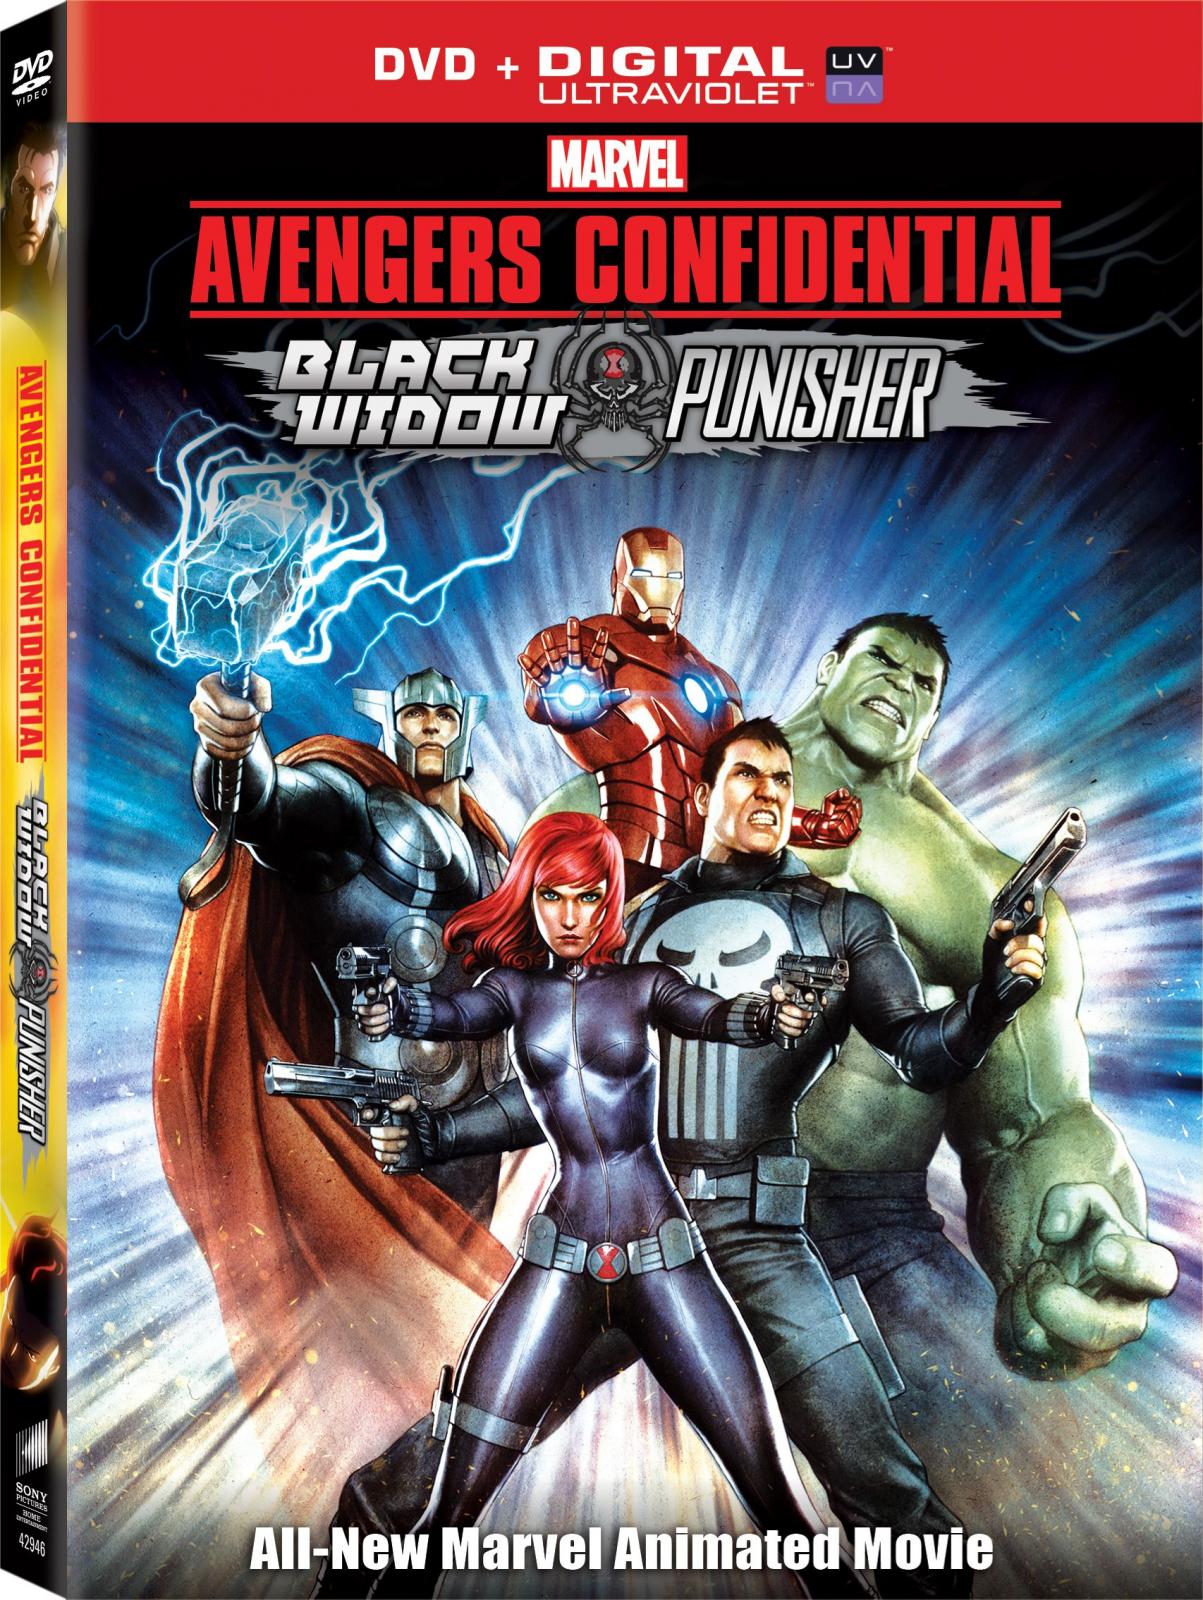 Avengers_DVD_Outersleeve_FrontLeft.jpg